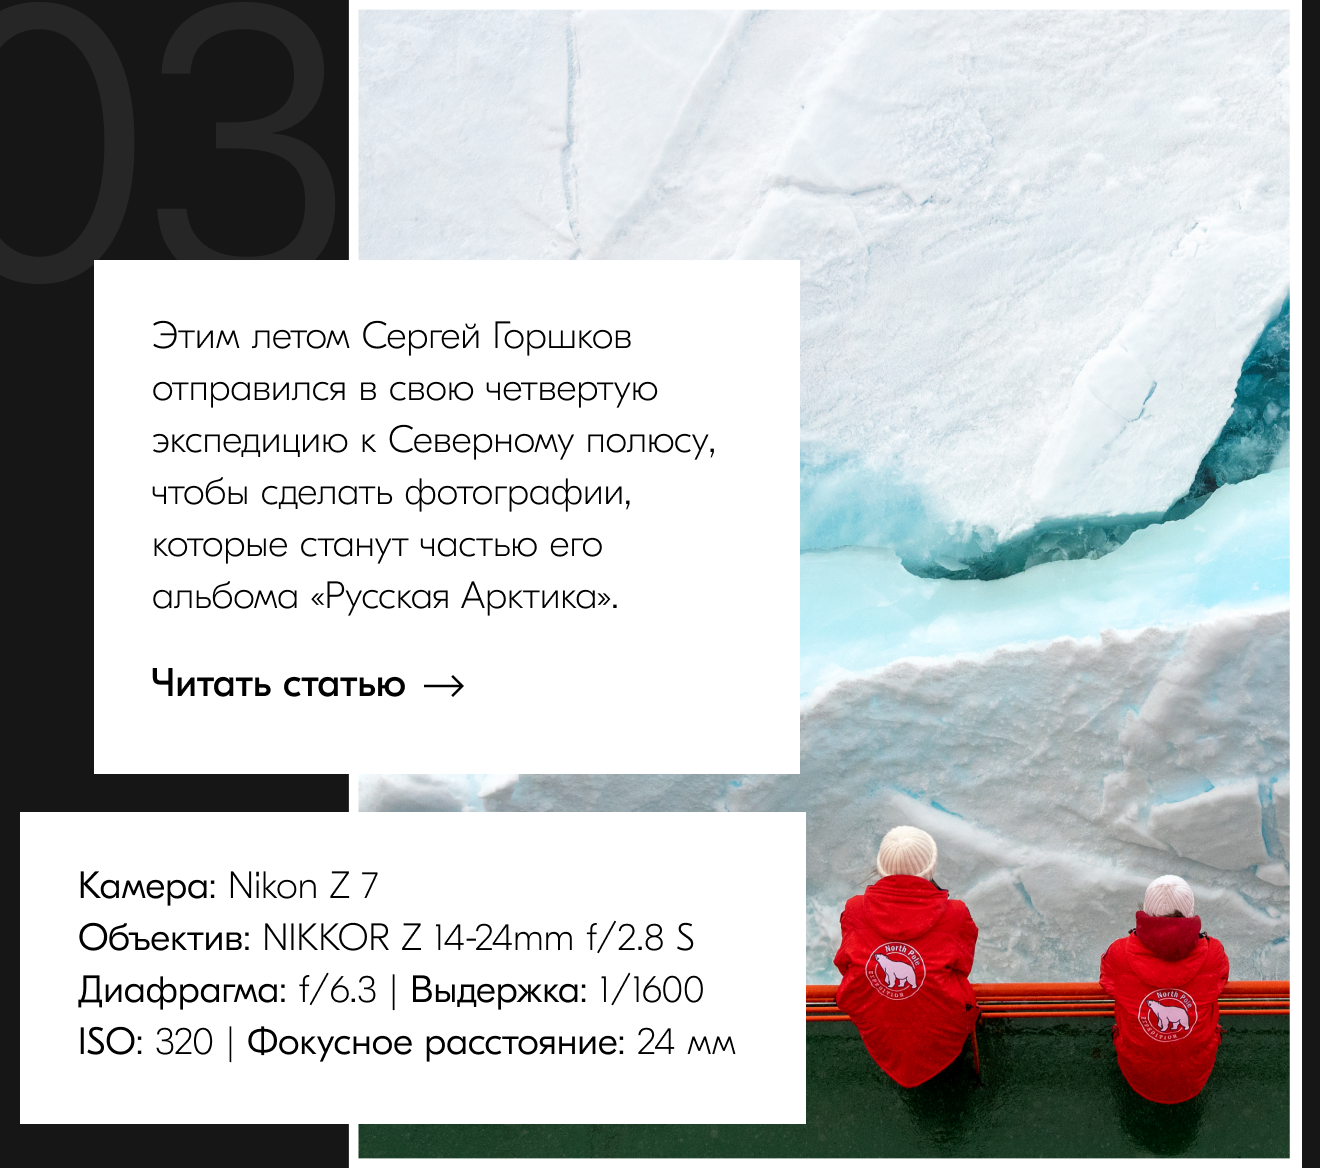 Этим летом Сергей Горшков отправился в свою четвертую экспедицию к Северному полюсу, чтобы сделать фотографии, которые станут частью его альбома «Русская Арктика».